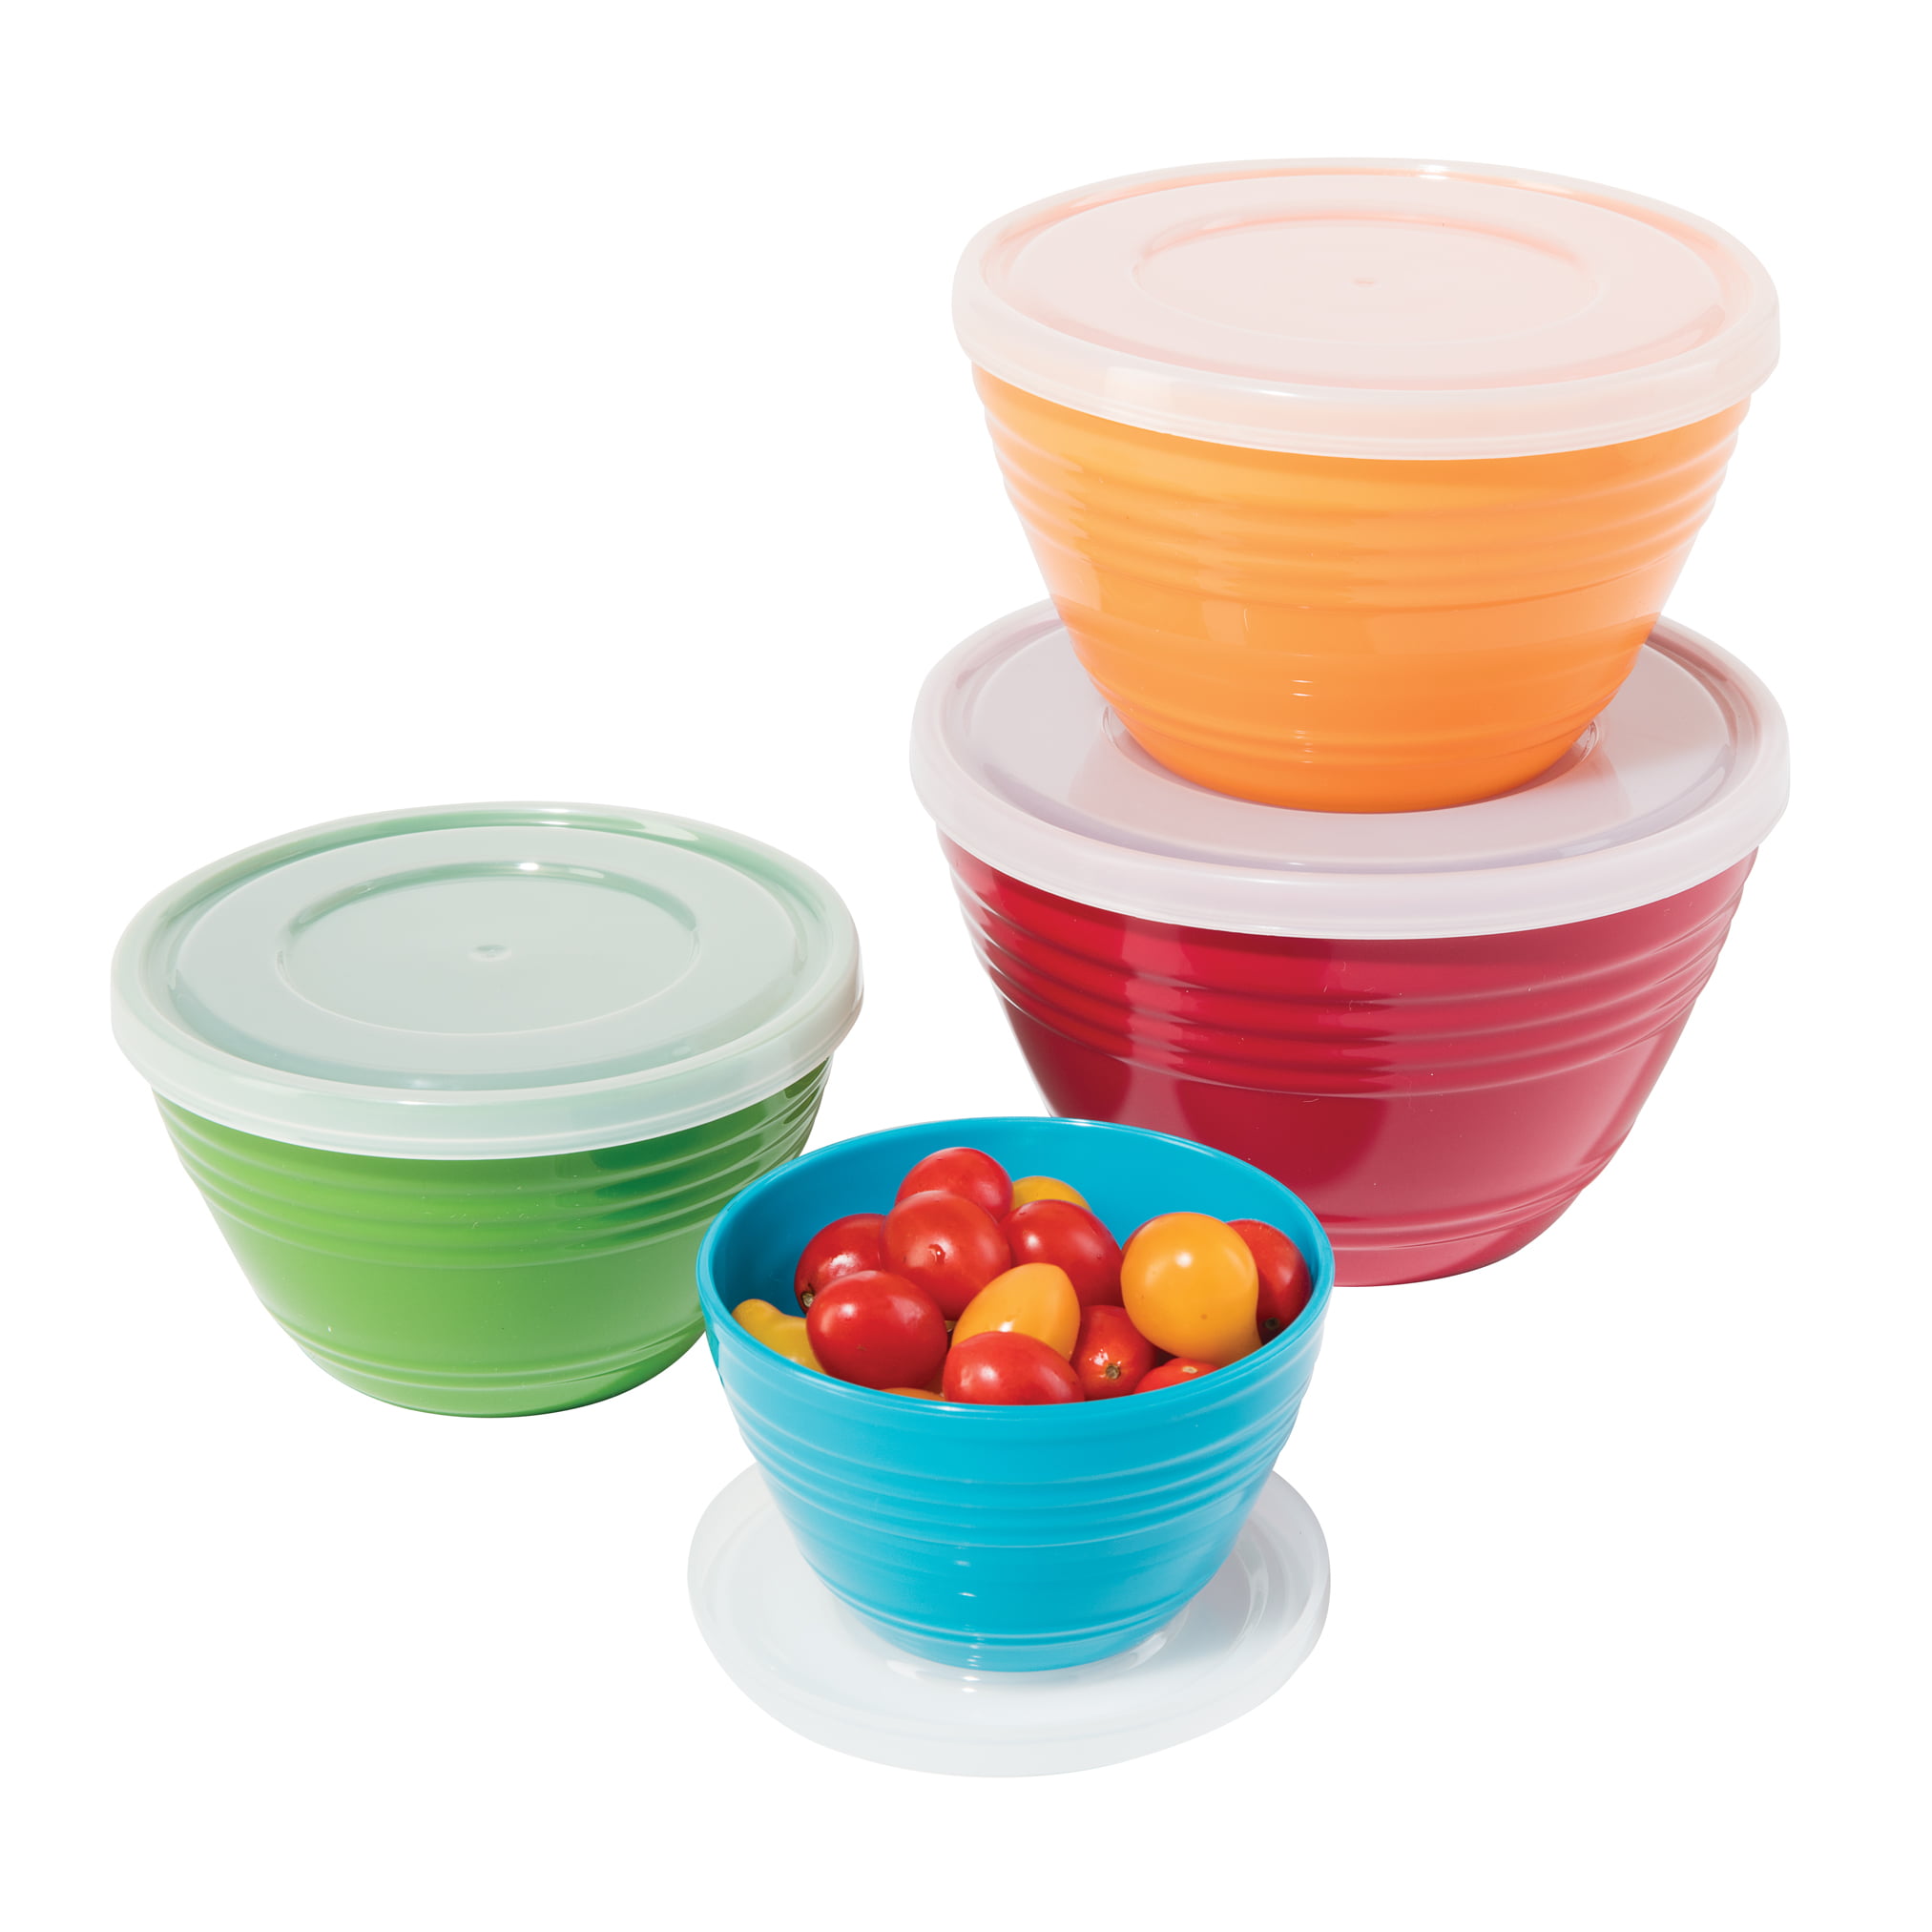 Oggi Melamine Prep Bowls with Lids (Set of 4), Multicolor - Walmart.com